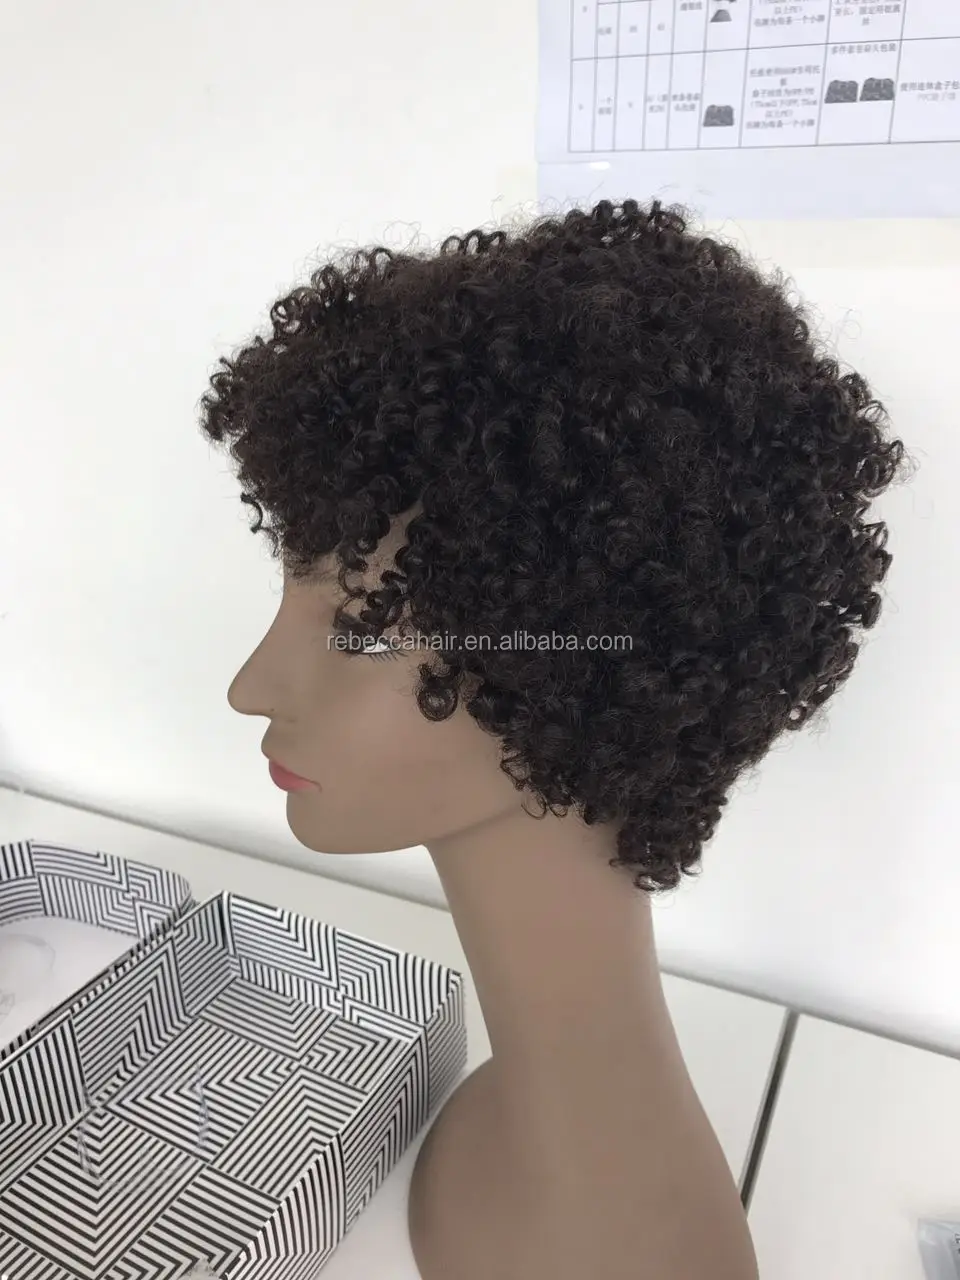 レベッカファッションノーブルレミーヘアブラジルの髪新製品バージン人毛ウィッグ Buy 人間の髪かつら 機械製かつら レミーの毛 Product On Alibaba Com